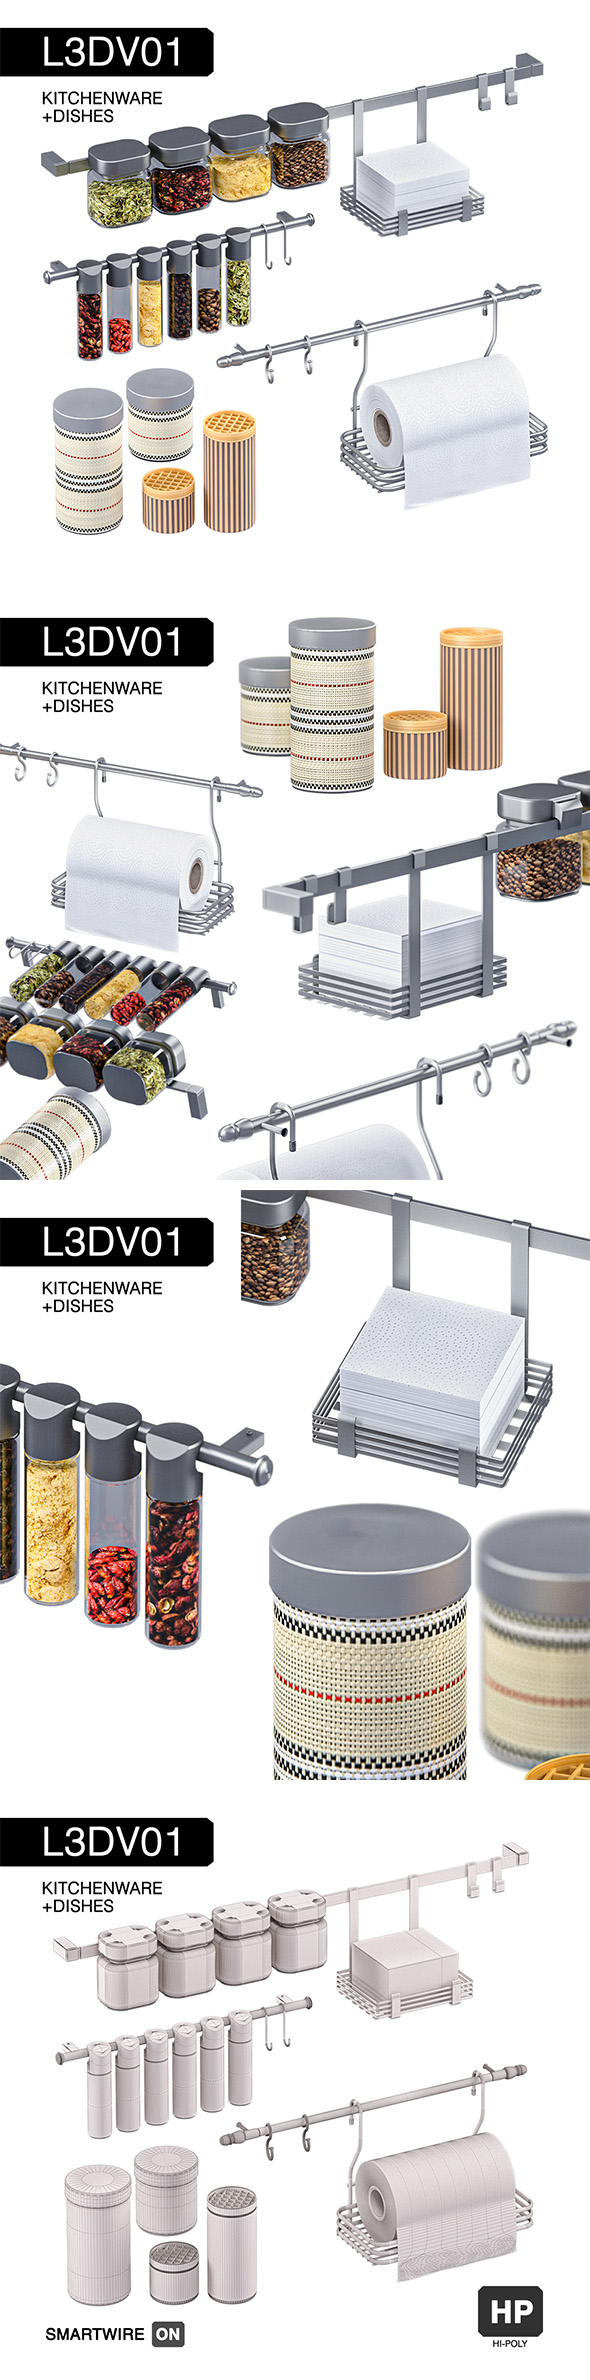 L3DV01G07 - kitchenware - 3Docean 31053565